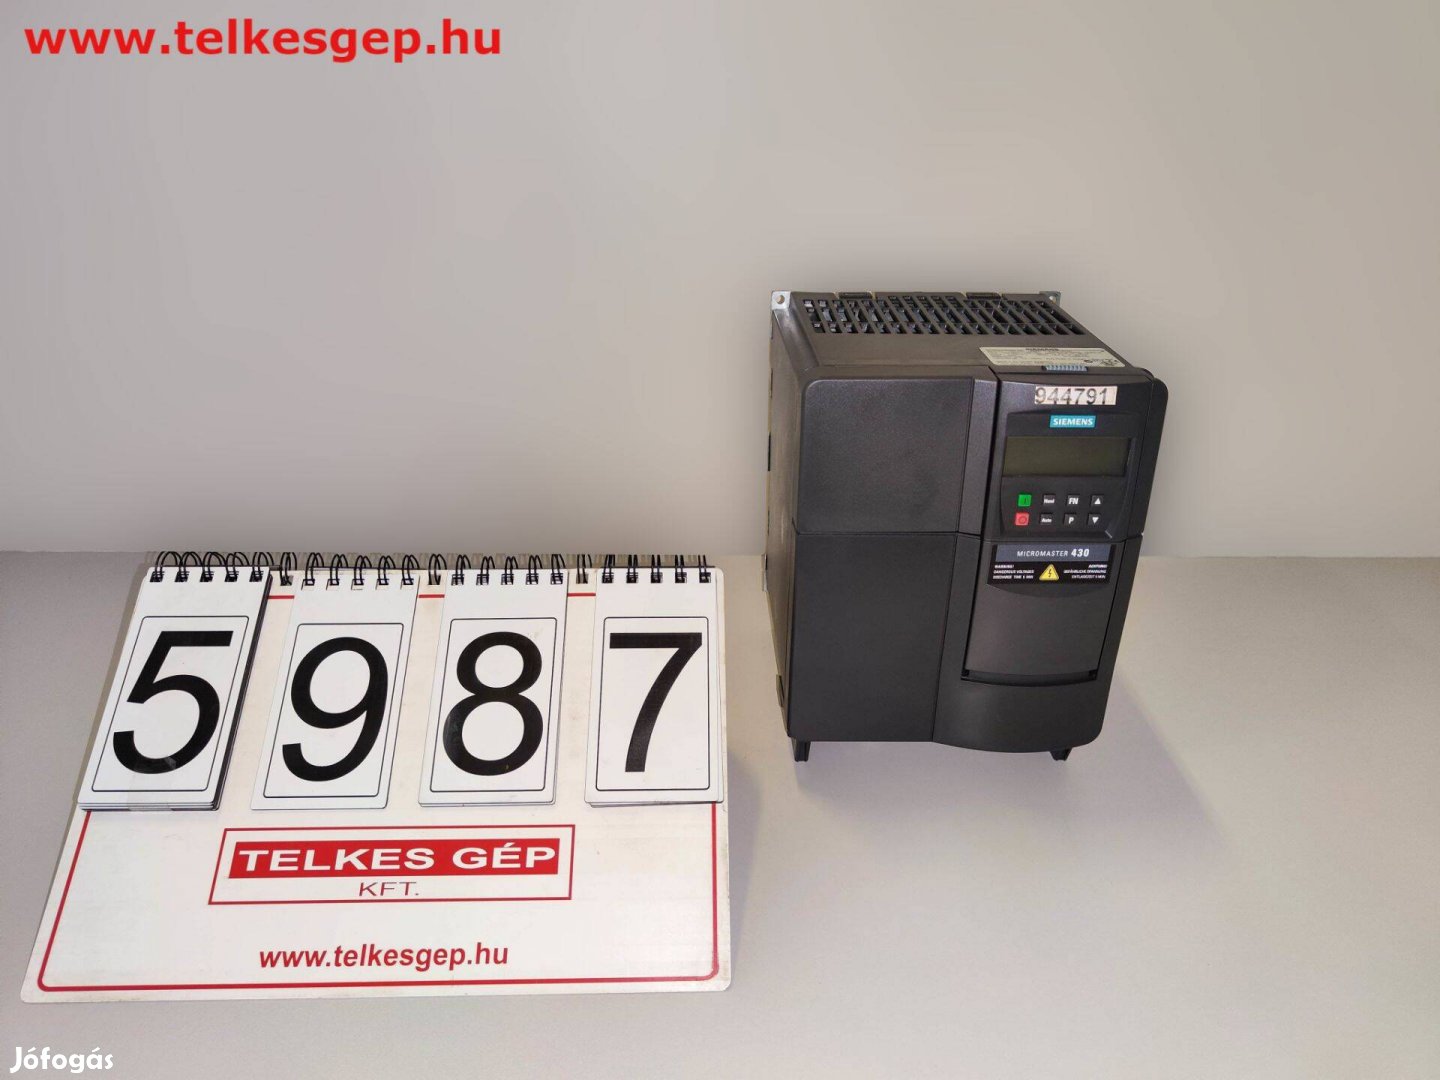 5987 - Frekvenciaváltó 7,5 KW Siemens Micromaster 430